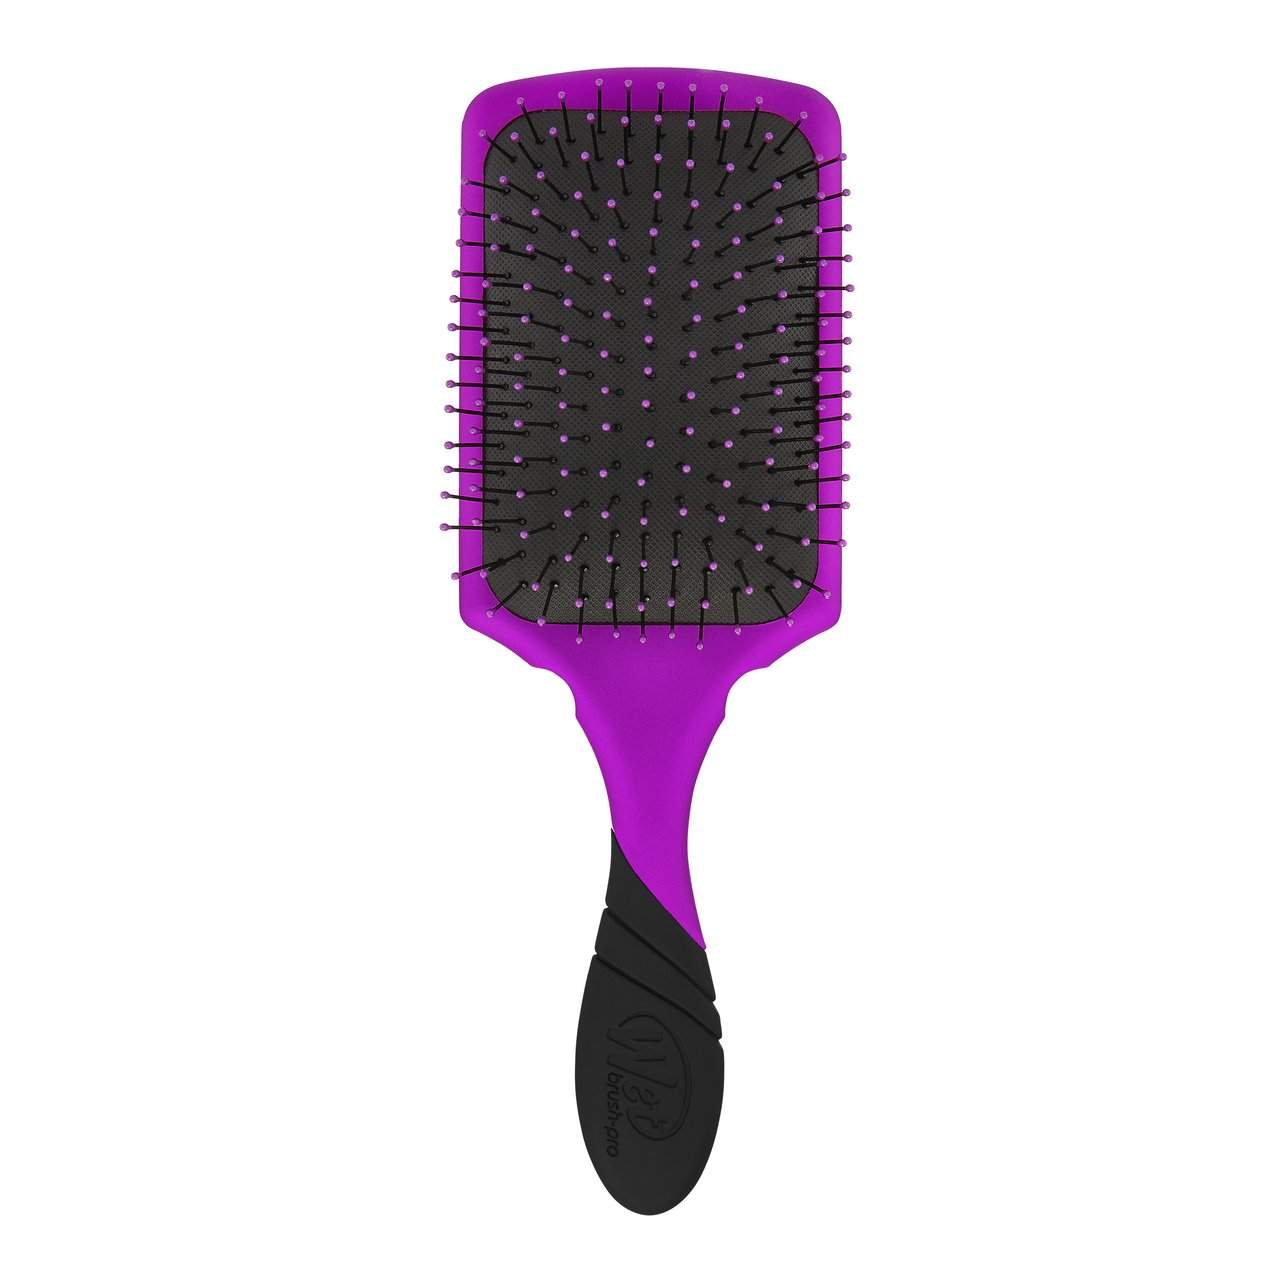 Wet Brush Pro Paddle Detangler Brush-Wet Brush-Brand_Wet Brush,Collection_Hair,Collection_Tools and Brushes,Tool_Brushes,Tool_Detangling Brush,Tool_Hair Tools,WET_Paddle Detanglers